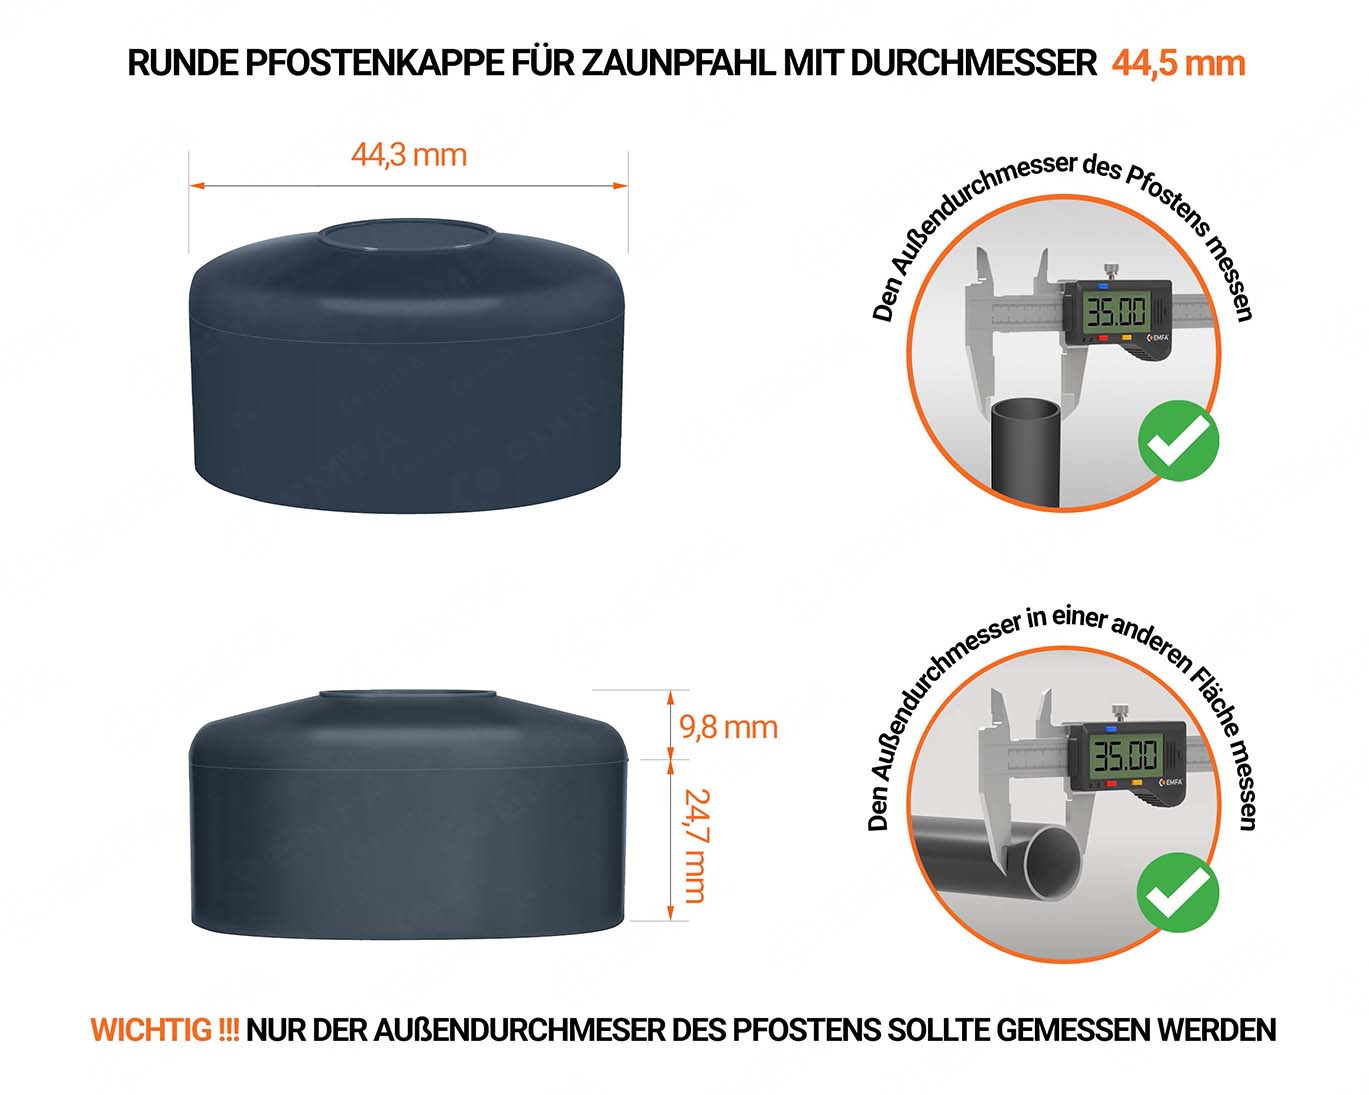 Anthrazite Pfostenkappen rund für Pfostendurchmesser  44,5 mm mit technischen Abmessungen und Anleitung für korrekte Messung